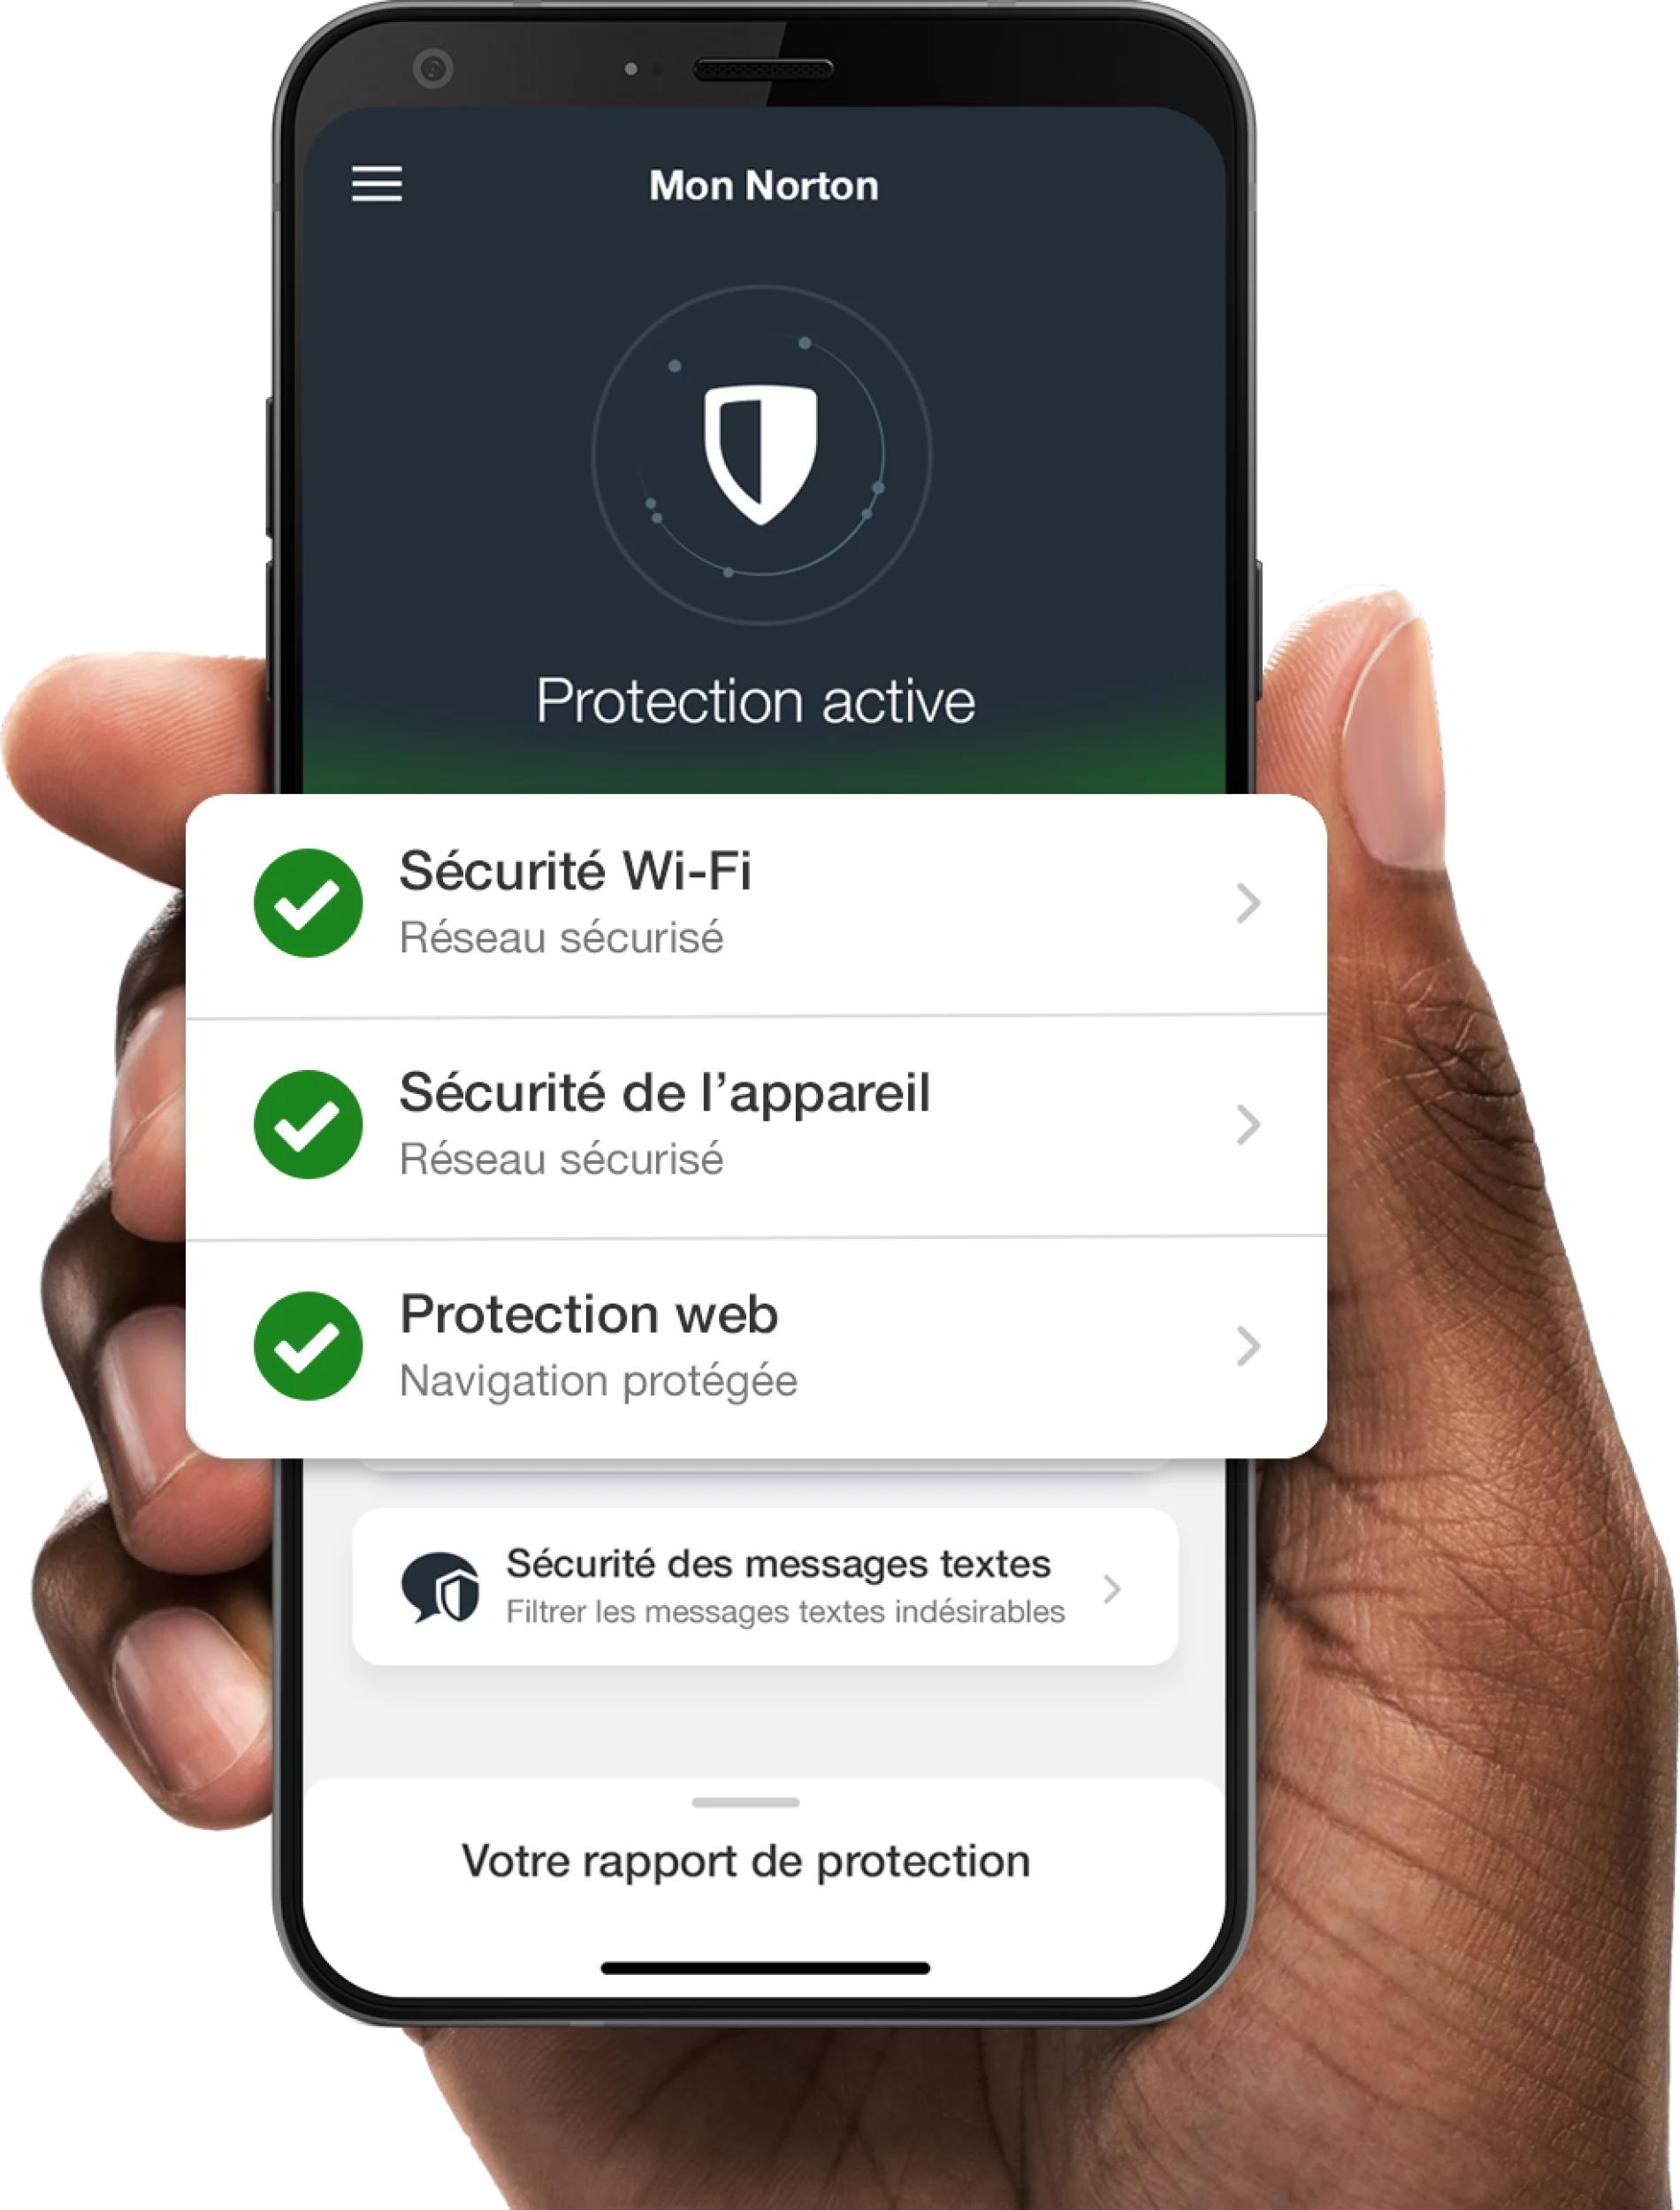 Un téléphone avec l’écran de l’appli Mon Norton montrant un réseau sécurisé, des appareils sécurisés et la protection web.